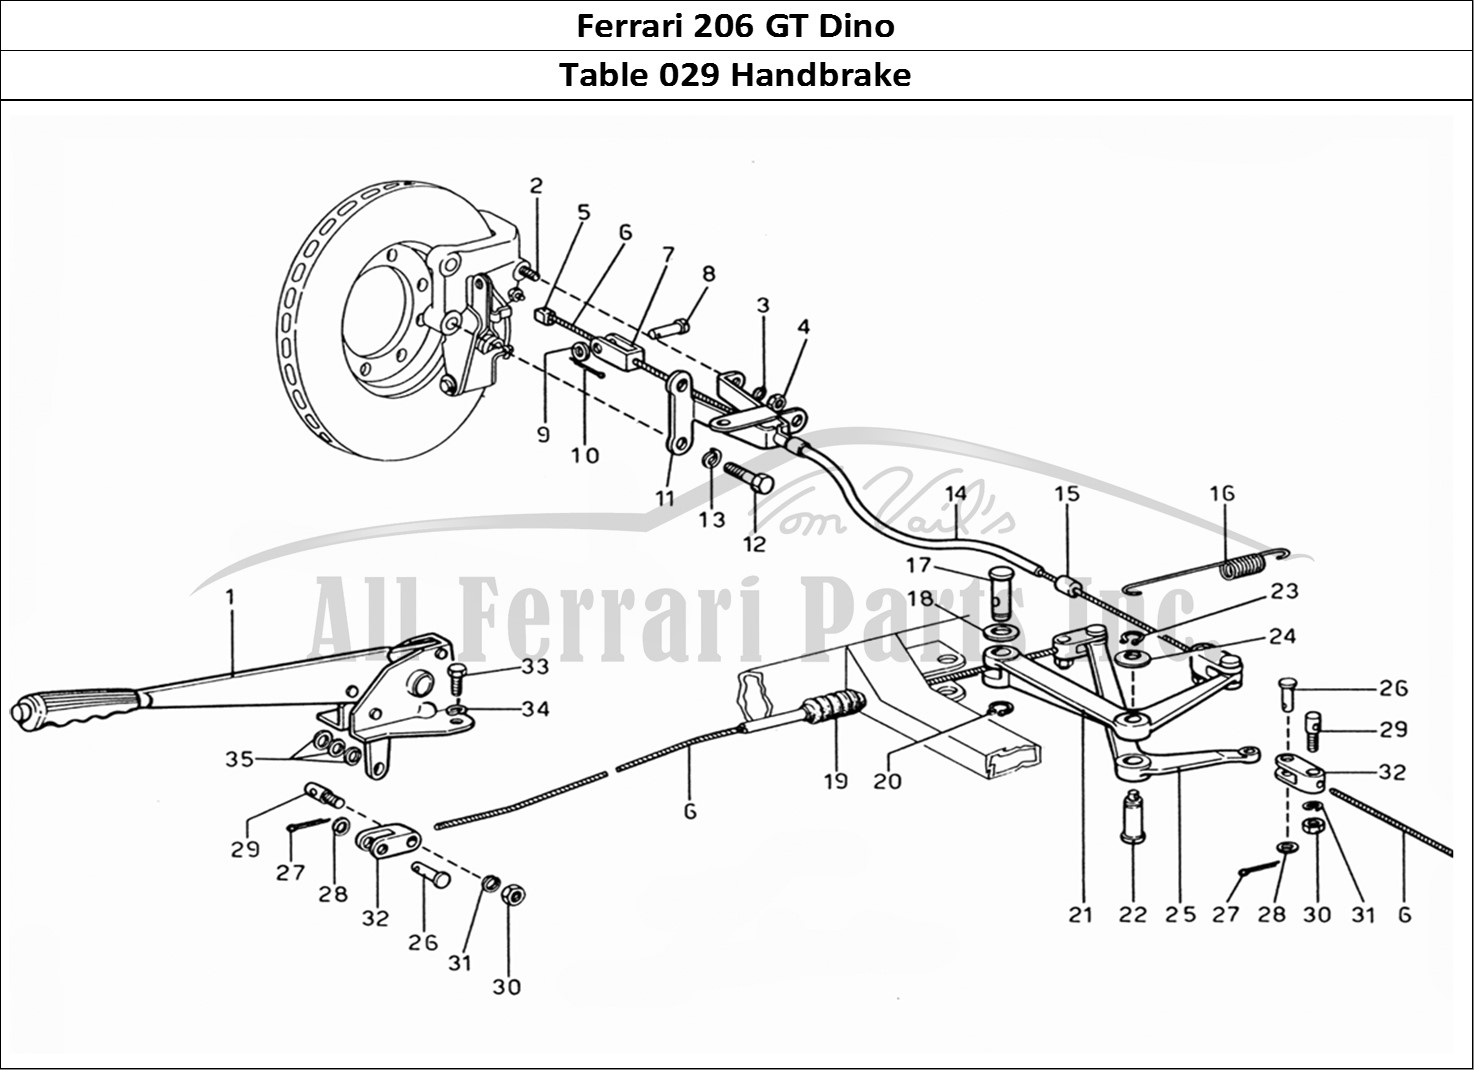 Ferrari Parts Ferrari 206 GT Dino (1969) Page 029 Hand Brakes Control